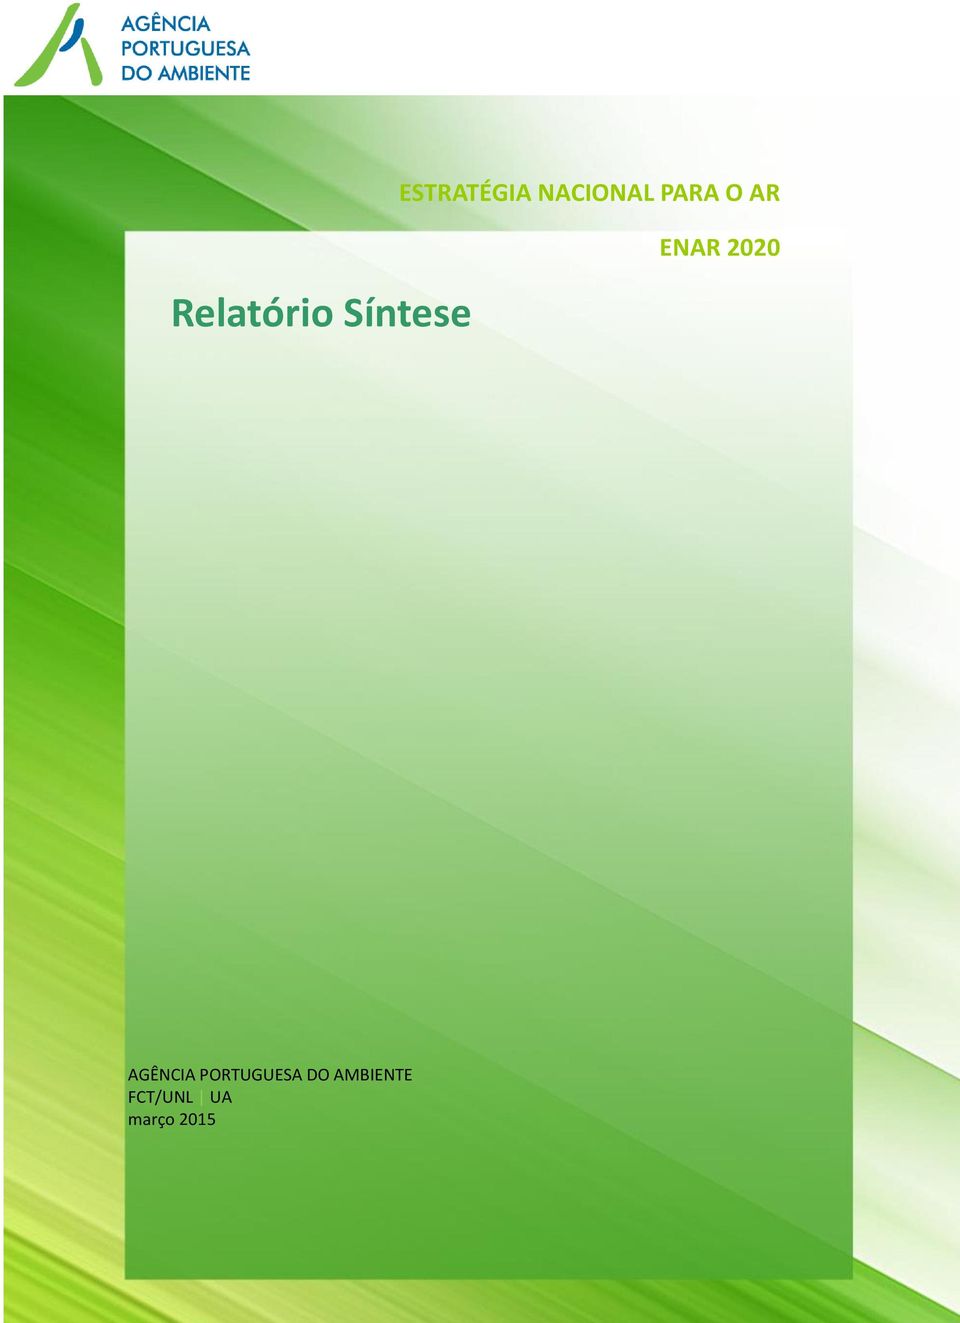 PORTUGUESA DO AMBIENTE ENAR FCT/UNL 2014 2020 UA Relatório